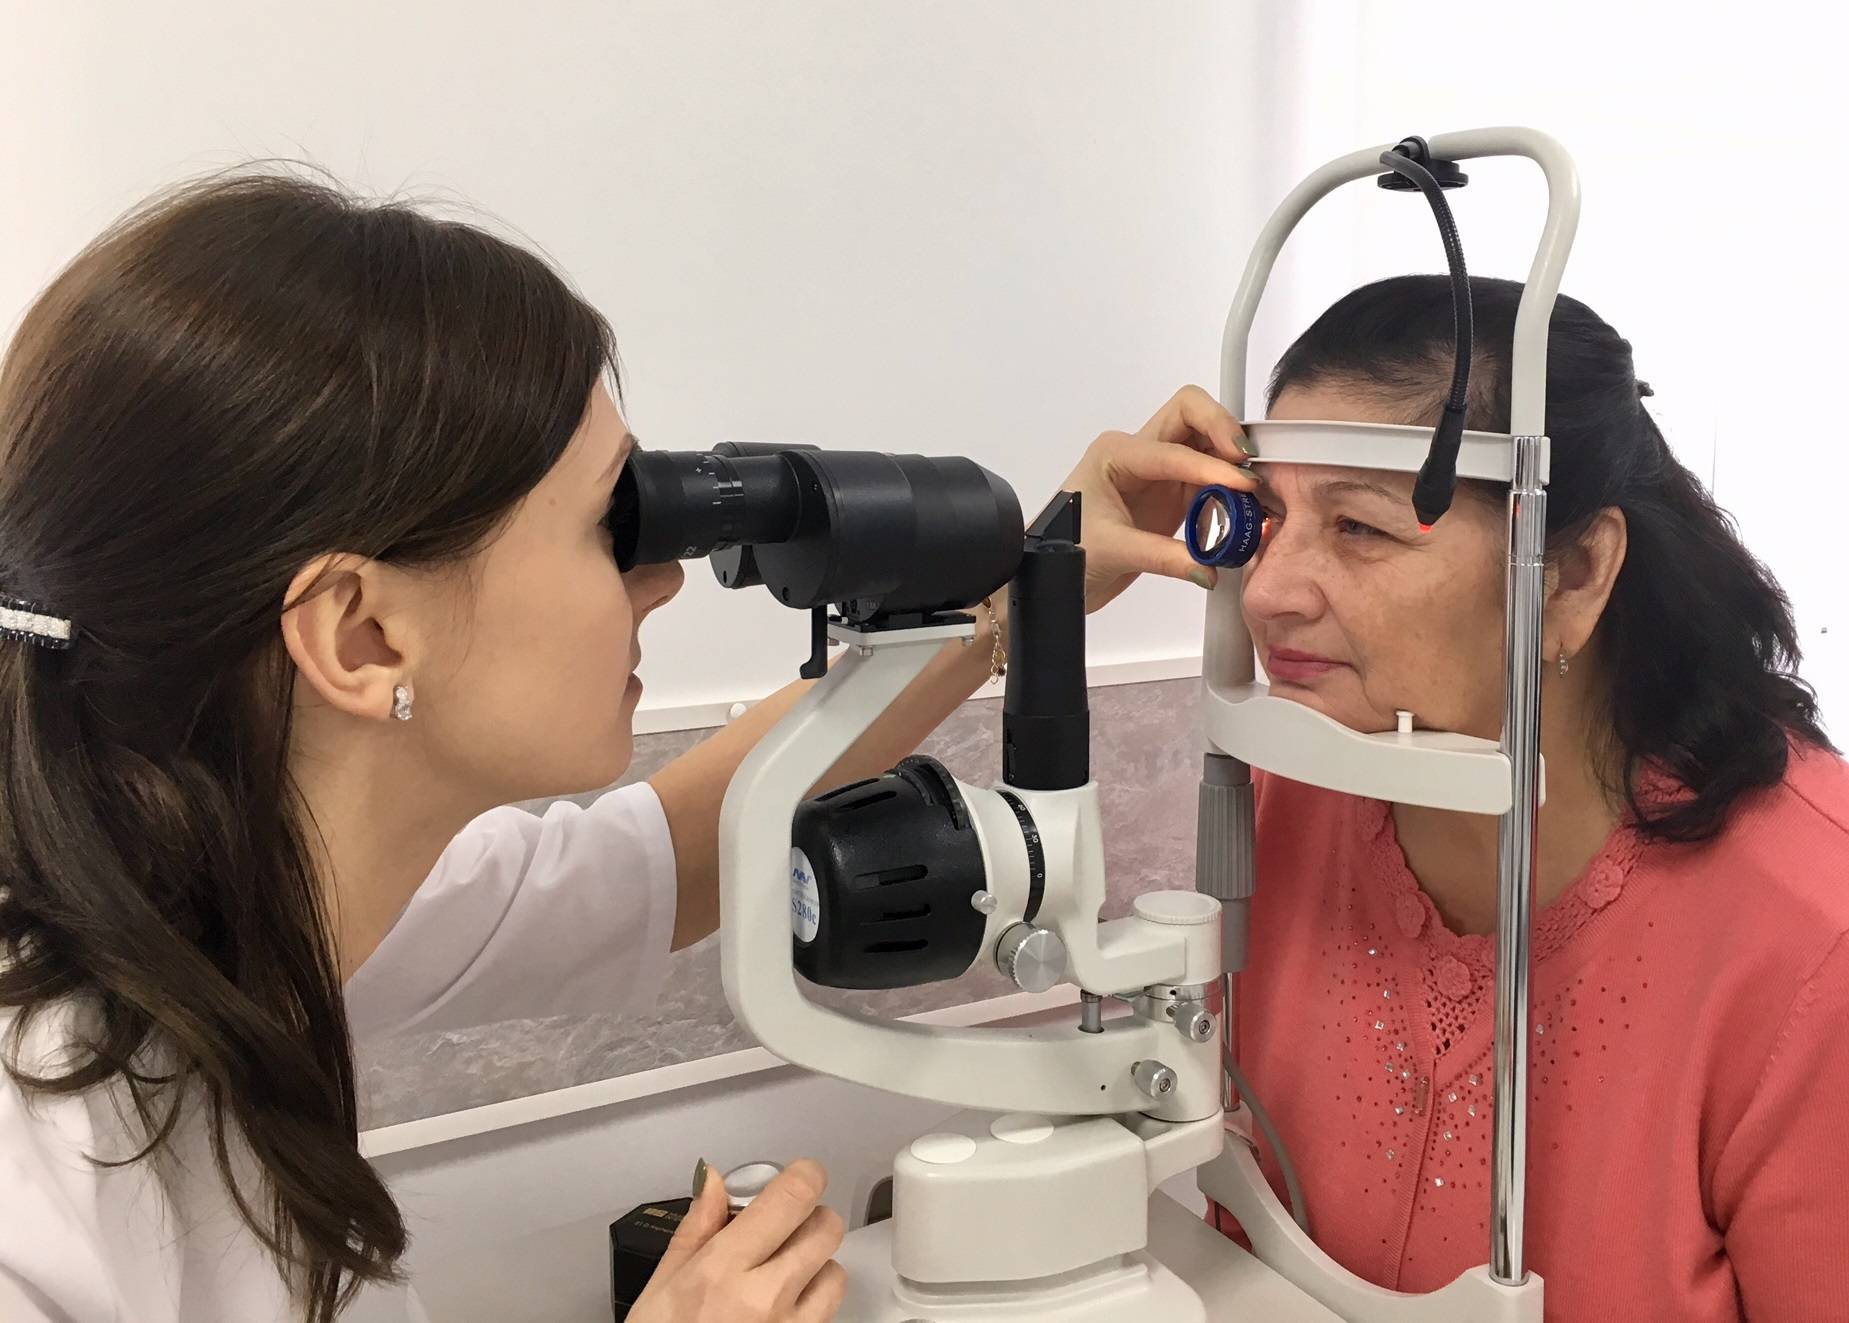 Биомикроскопия - новое зрение